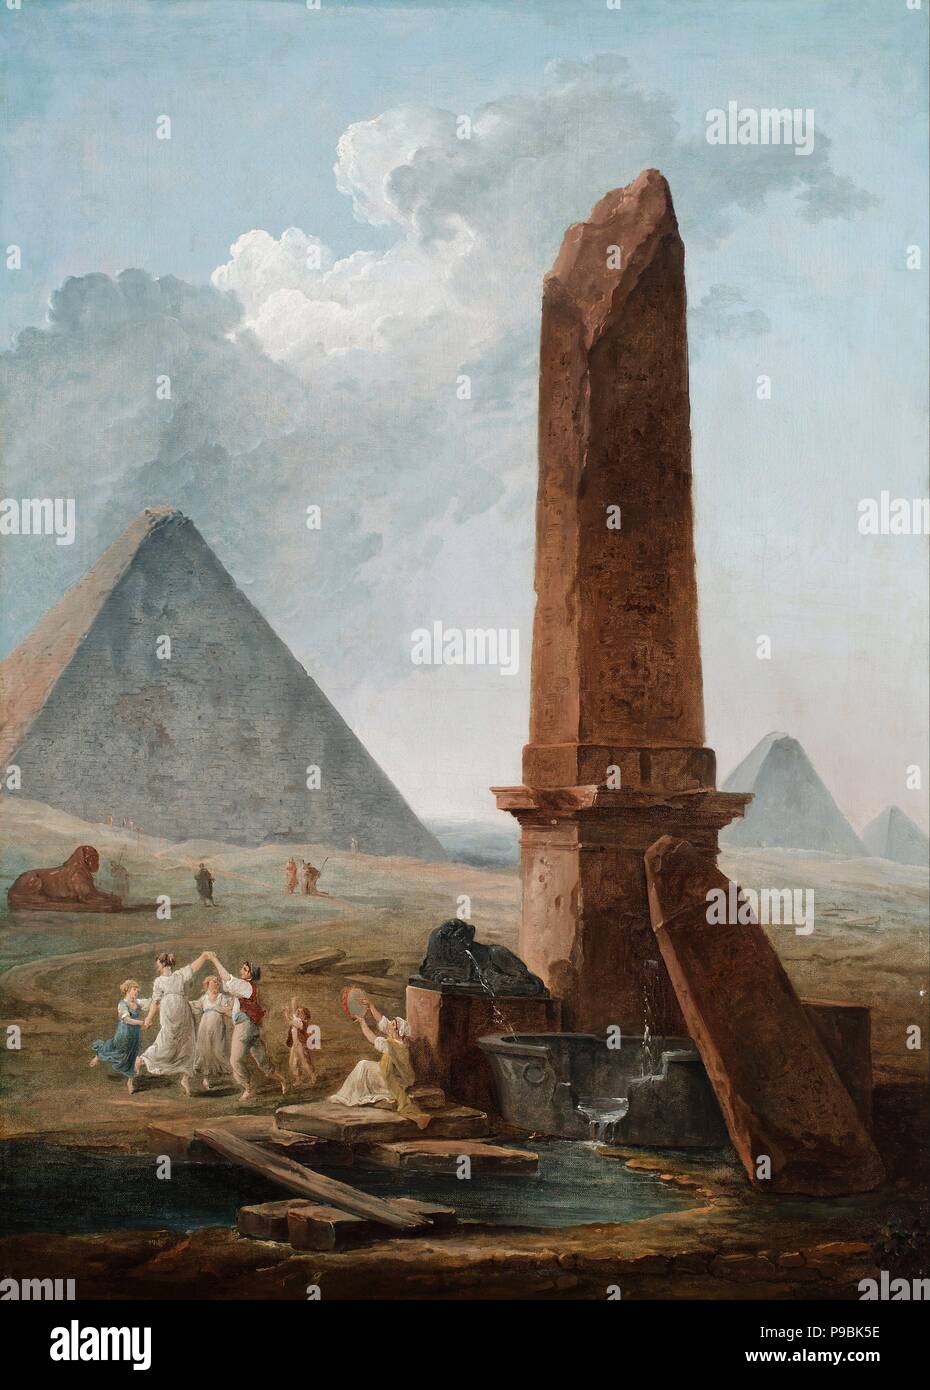 The Farandole Amidst Egyptian Monuments. Museum: Musée d'art classique, Mougins. Stock Photo